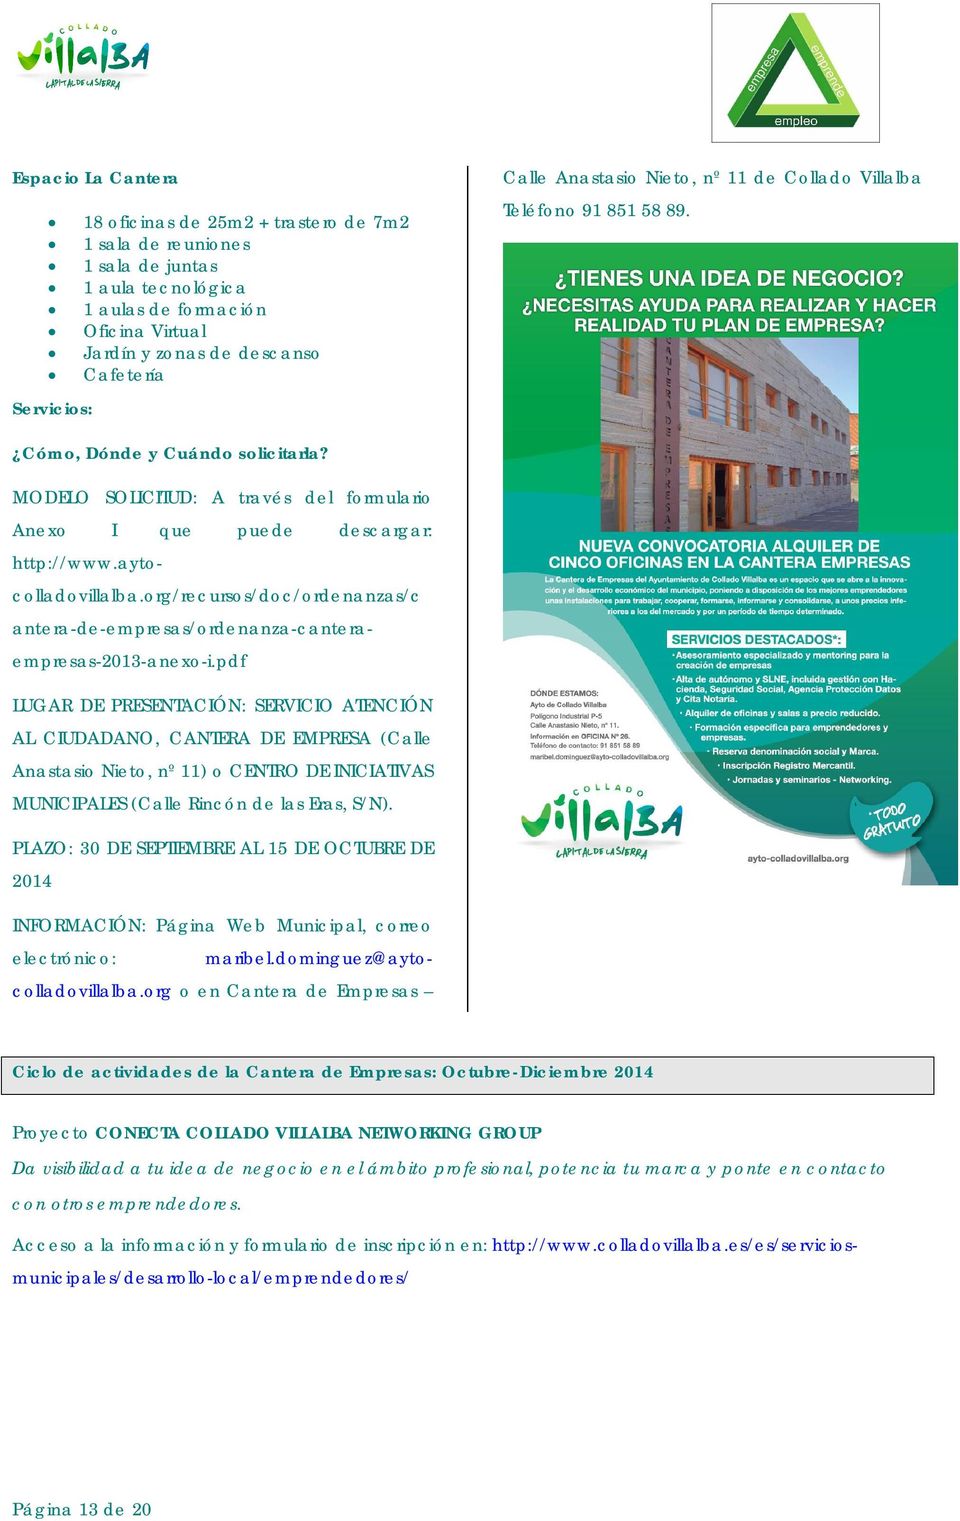 aytocolladovillalba.org/recursos/doc/ordenanzas/c antera-de-empresas/ordenanza-canteraempresas-2013-anexo-i.